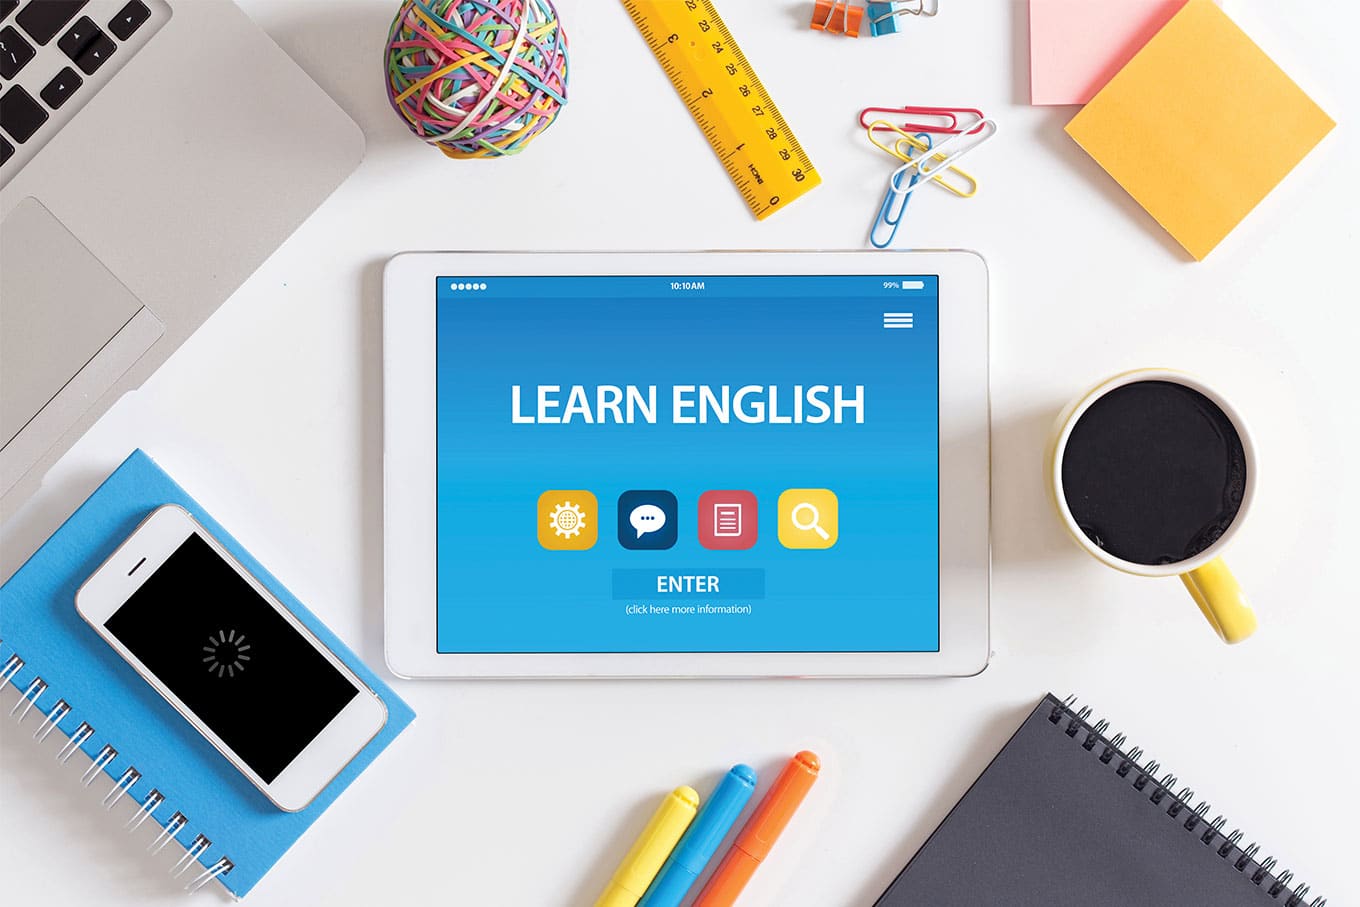 Cinco jogos online que ajudam a aprender inglês e idiomas no celular